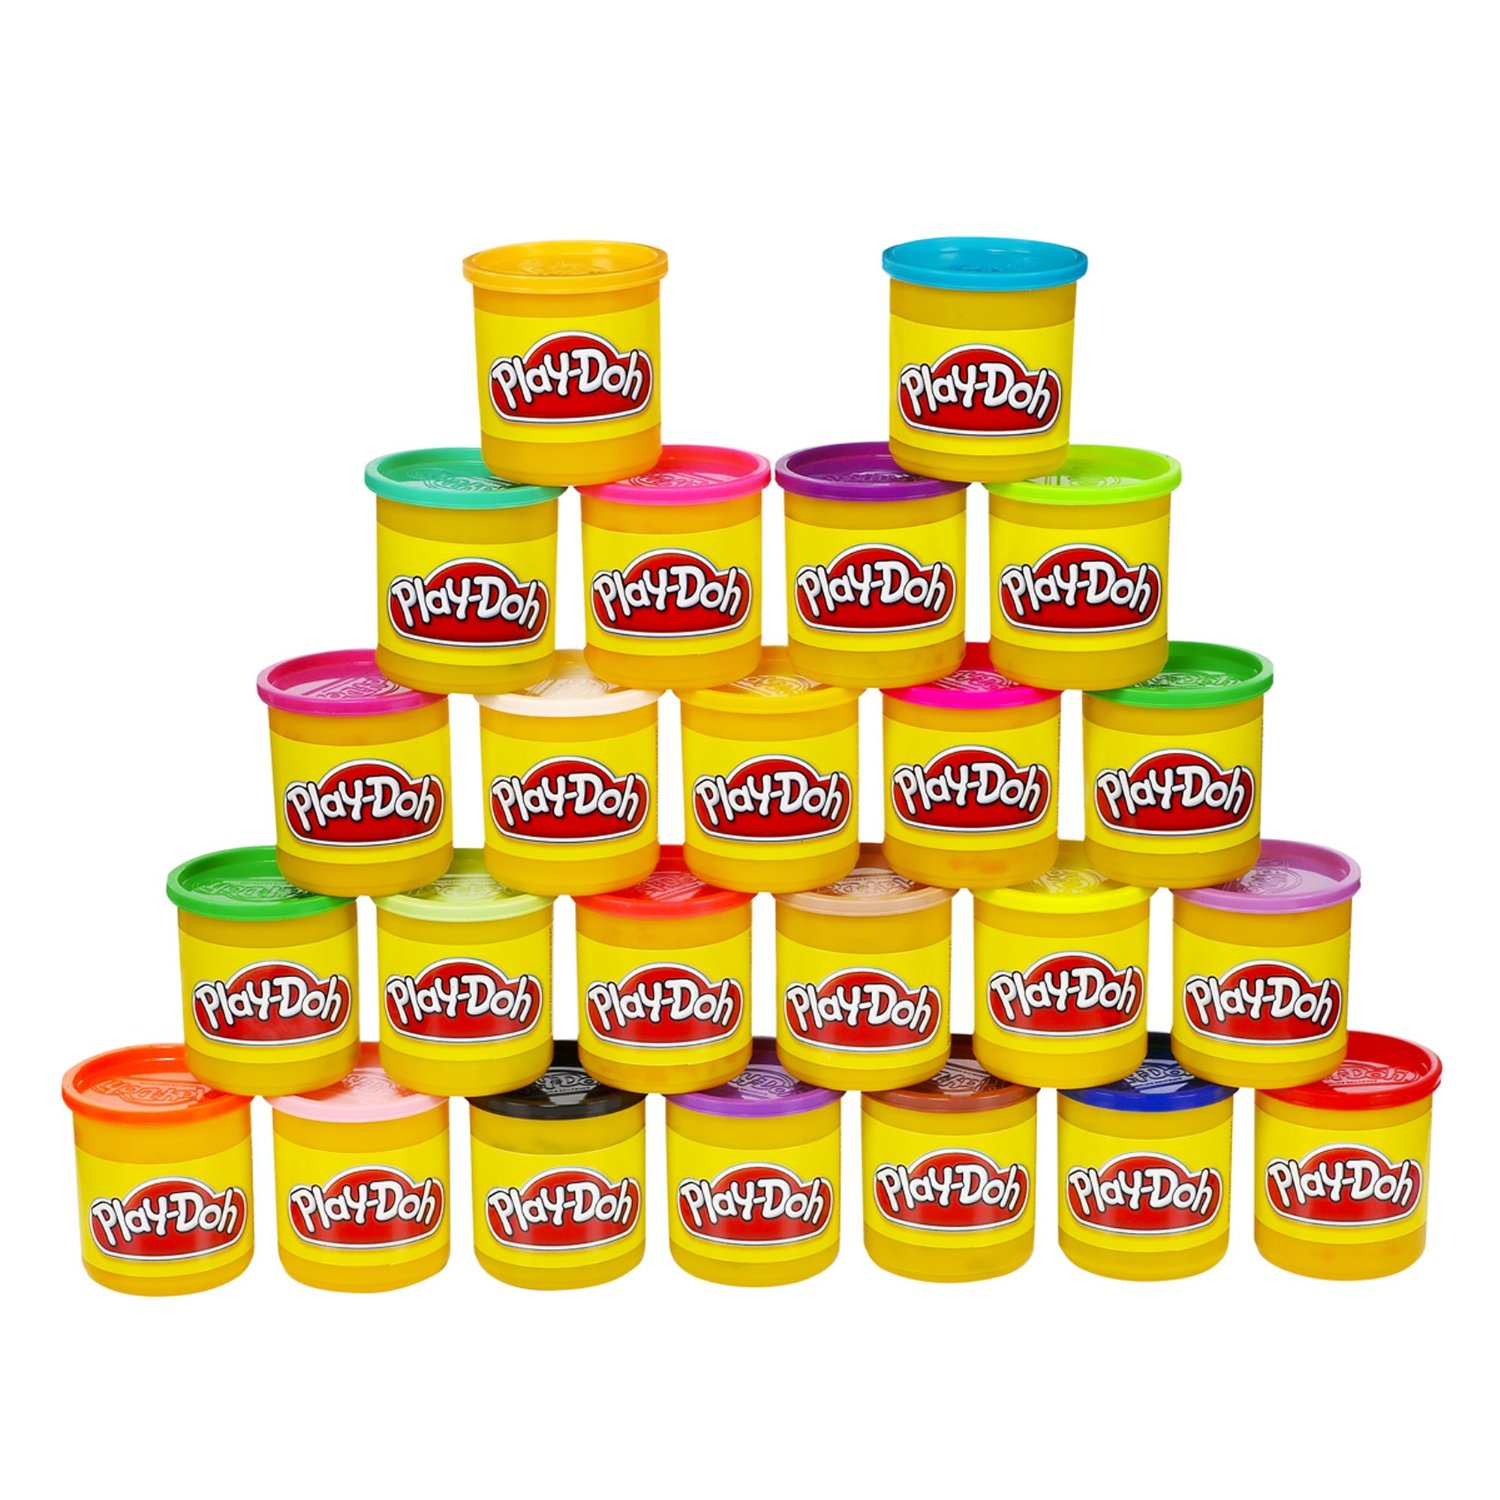 Bộ bột nặn 20 màu sắc Play - Doh